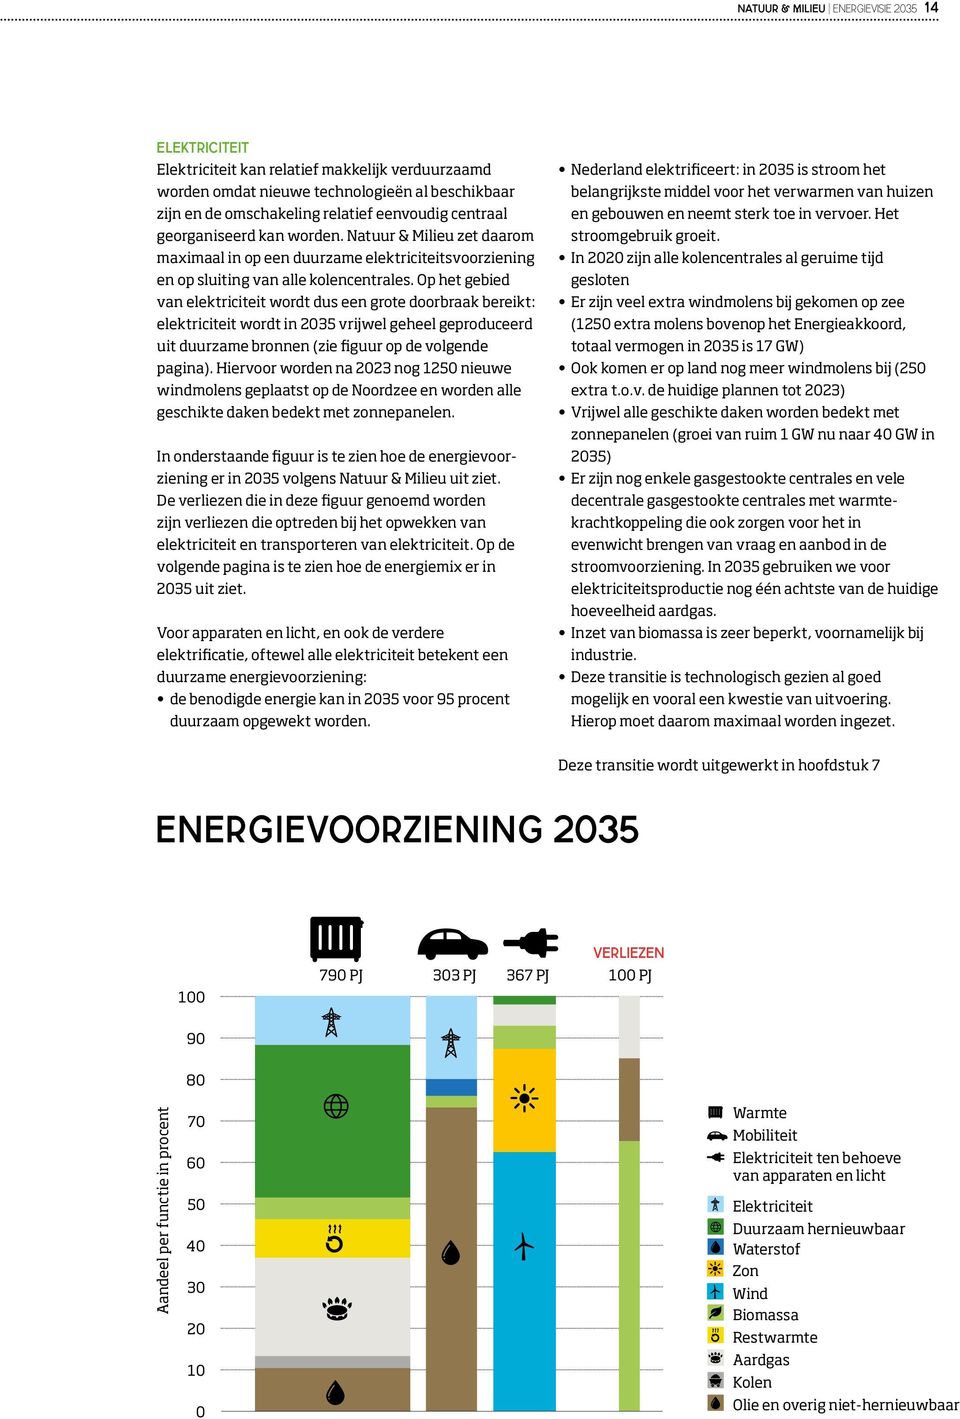 Op het gebied van elektriciteit wordt dus een grote doorbraak bereikt: elektriciteit wordt in 2035 vrijwel geheel geproduceerd uit duurzame bronnen (zie figuur op de volgende pagina).